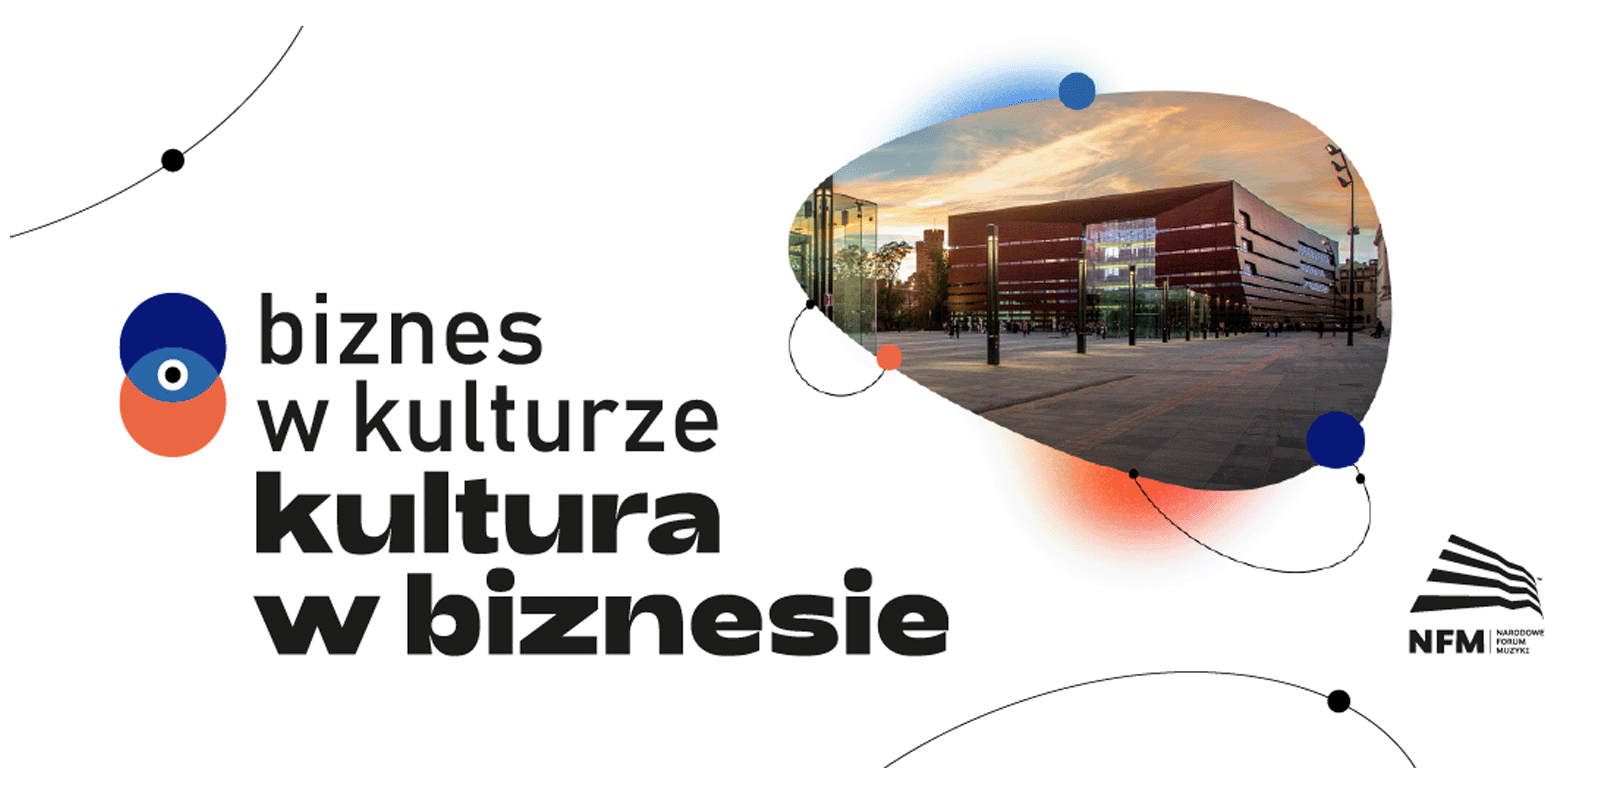 Debata „Biznes w kulturze – kultura w biznesie” Narodowego Forum Muzyki już w listopadzie! Biznes MEDIARUN COM NARODOWE FORUM MUZYKI DEBATA V1